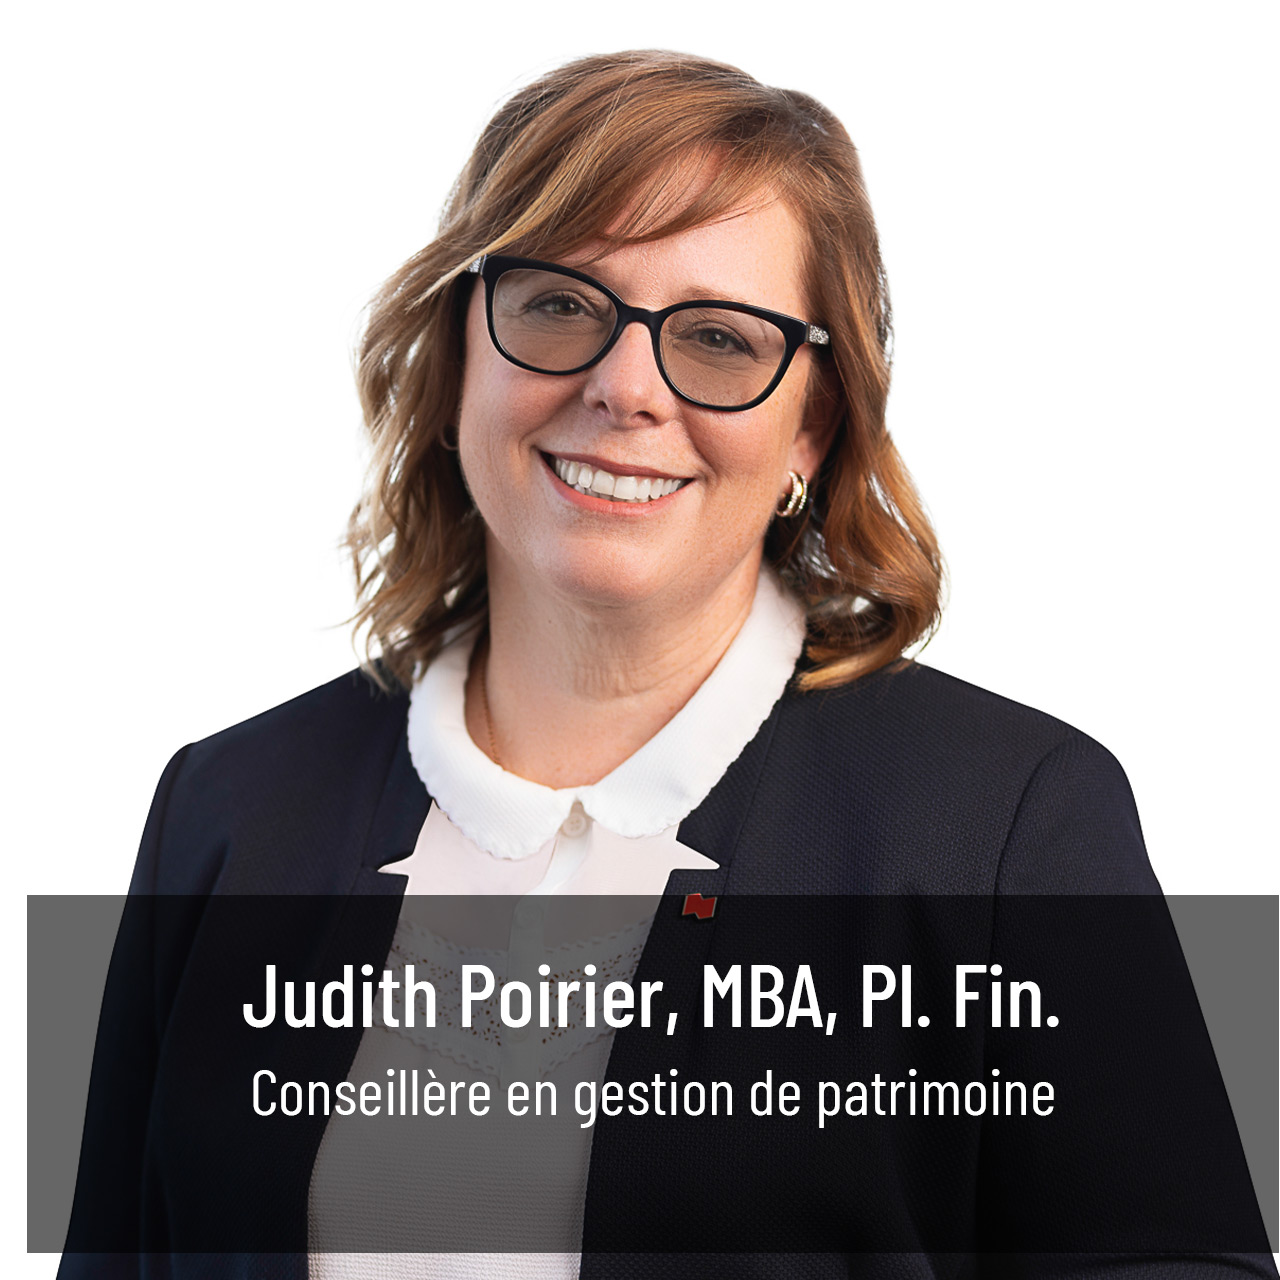 Judith Poirier